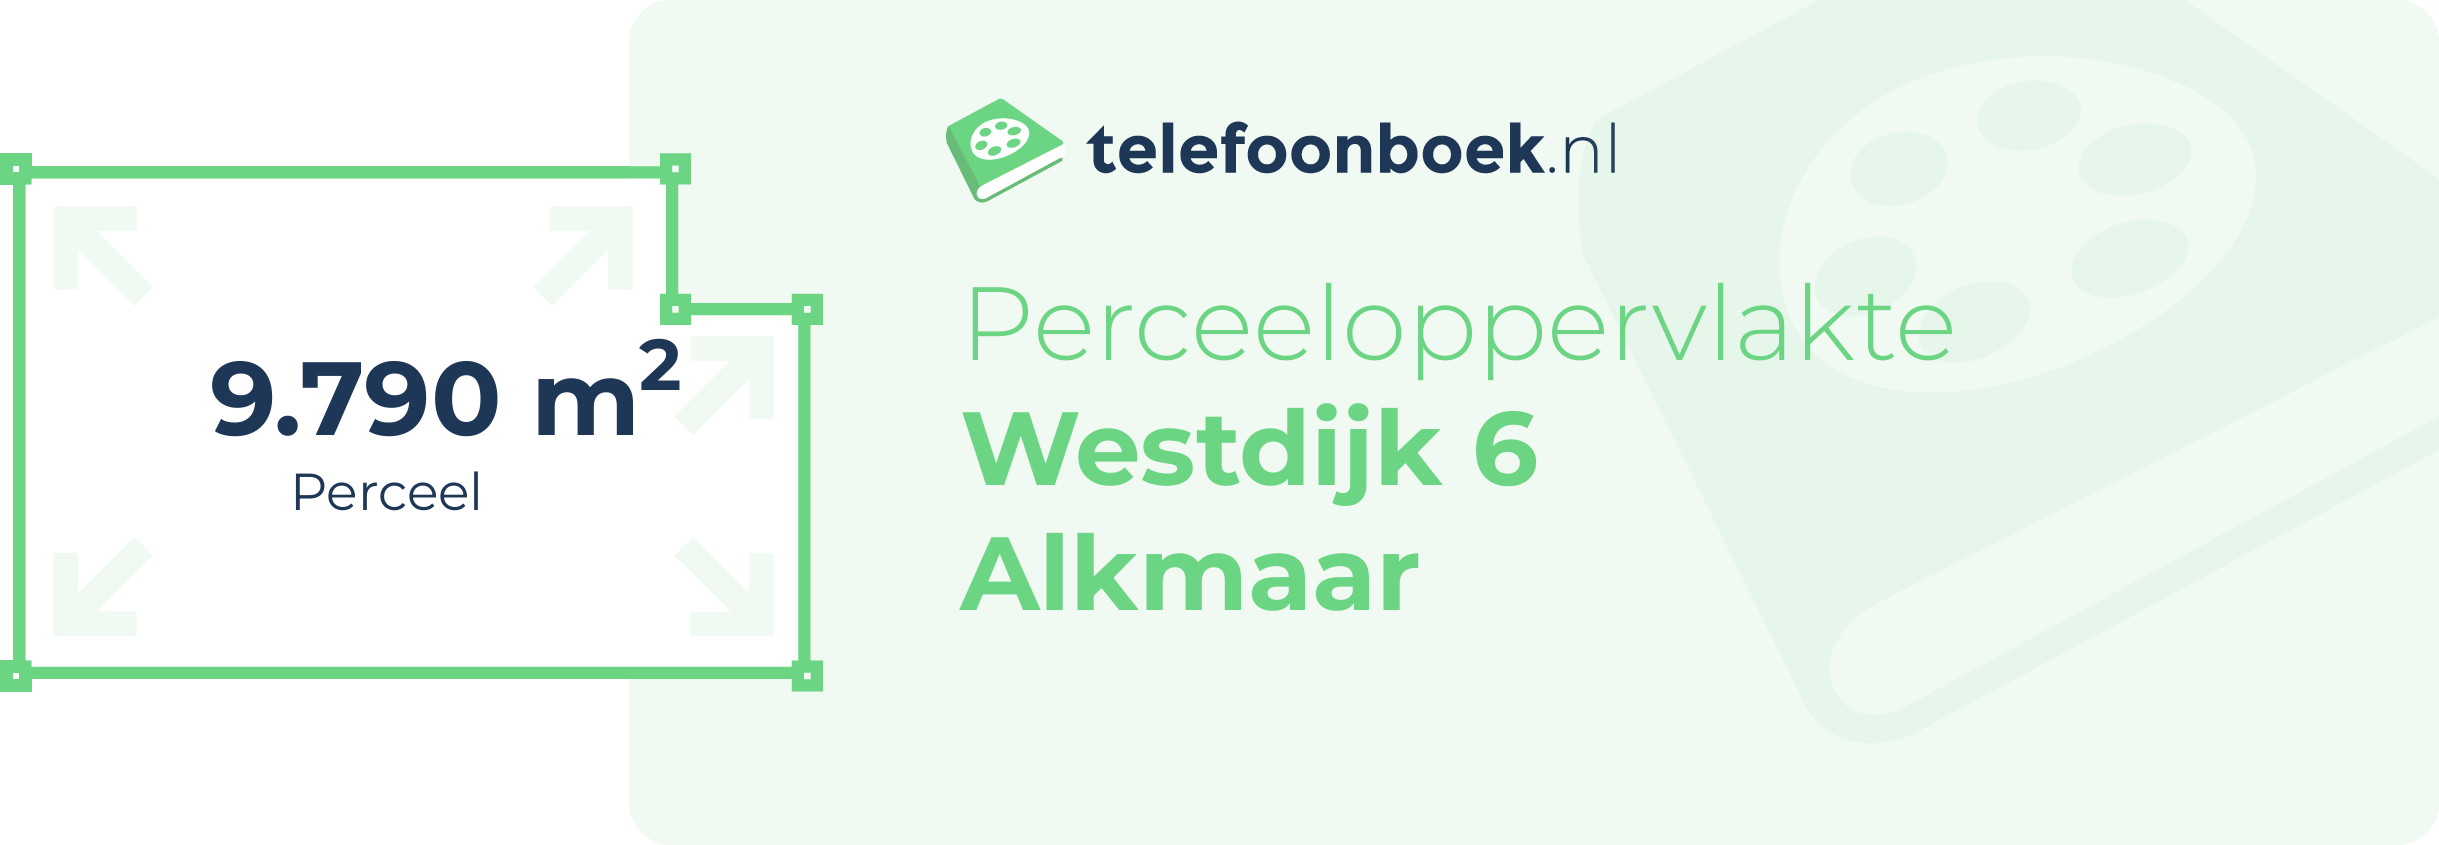 Perceeloppervlakte Westdijk 6 Alkmaar